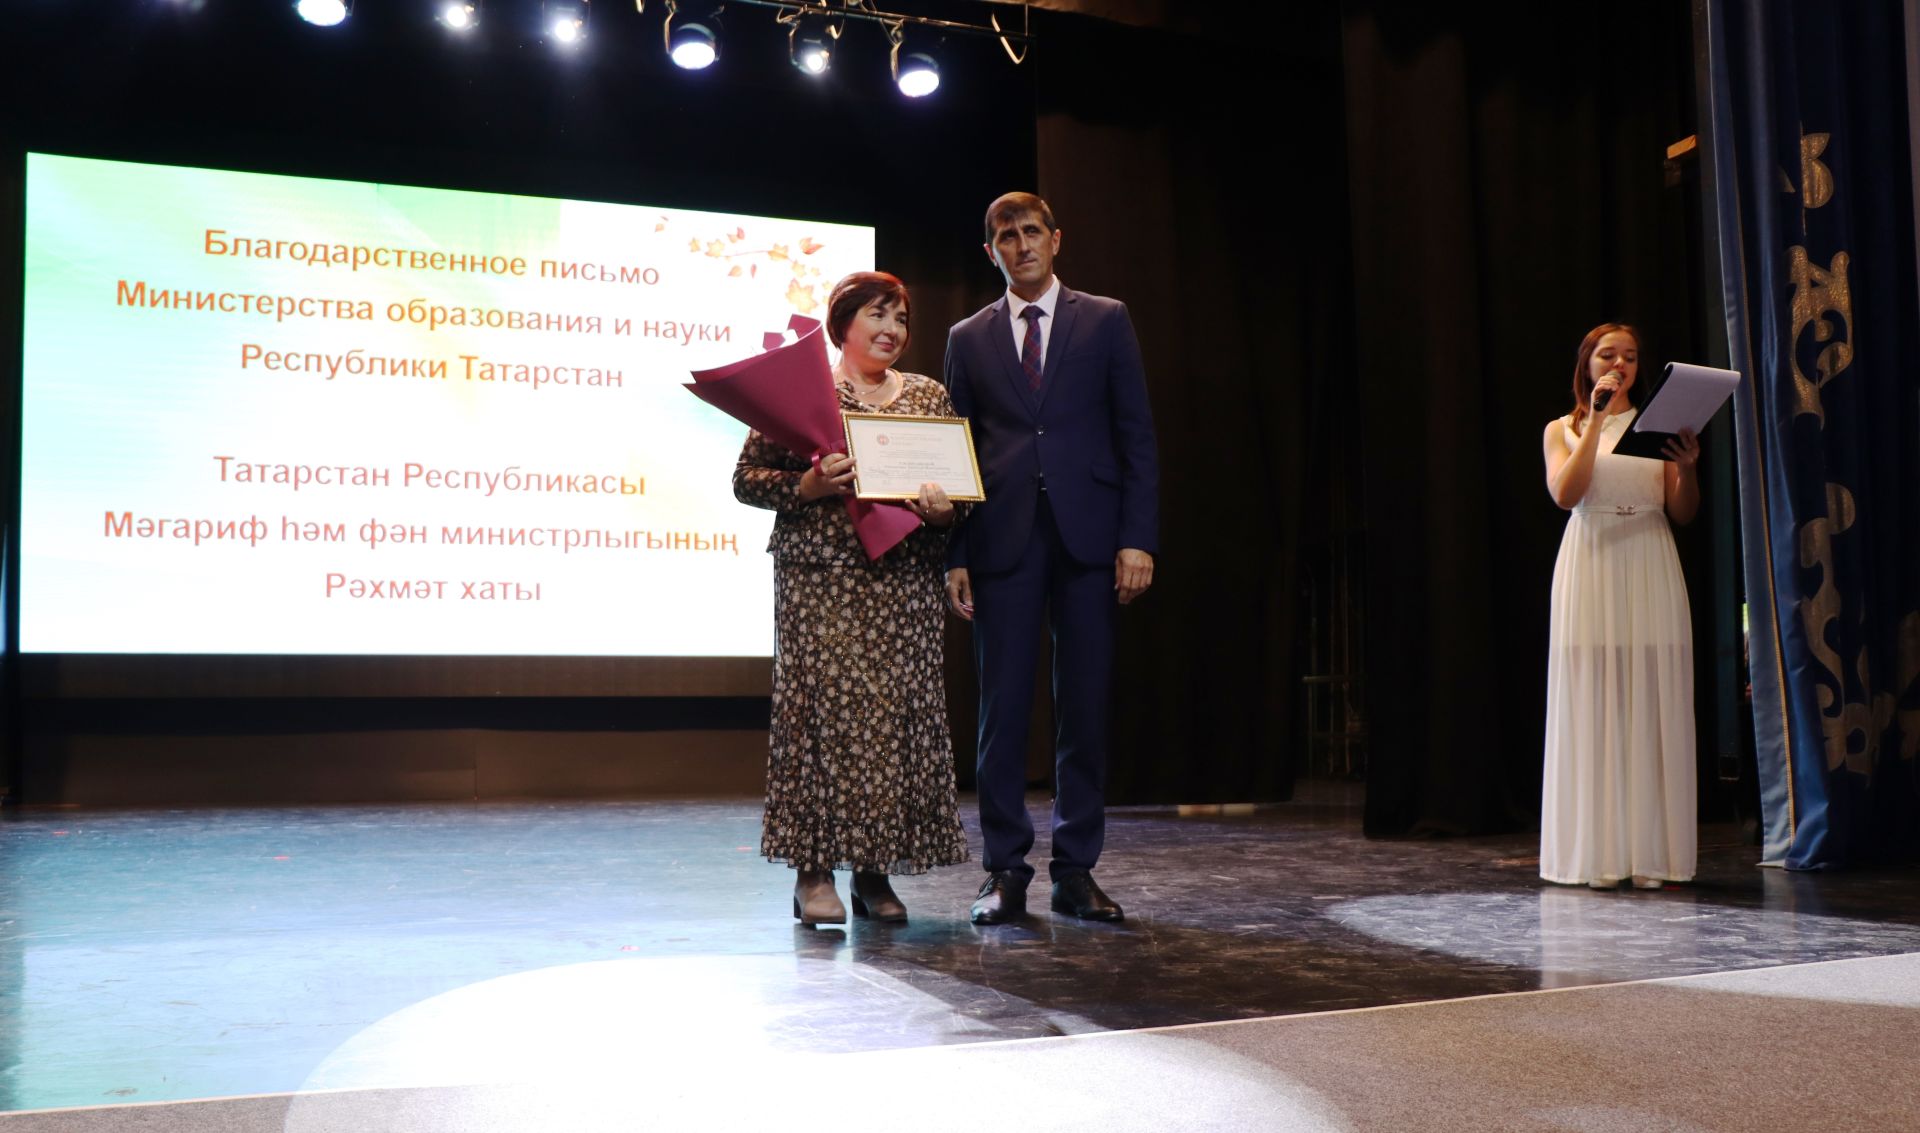 Поздравили учителей Лаишевского района